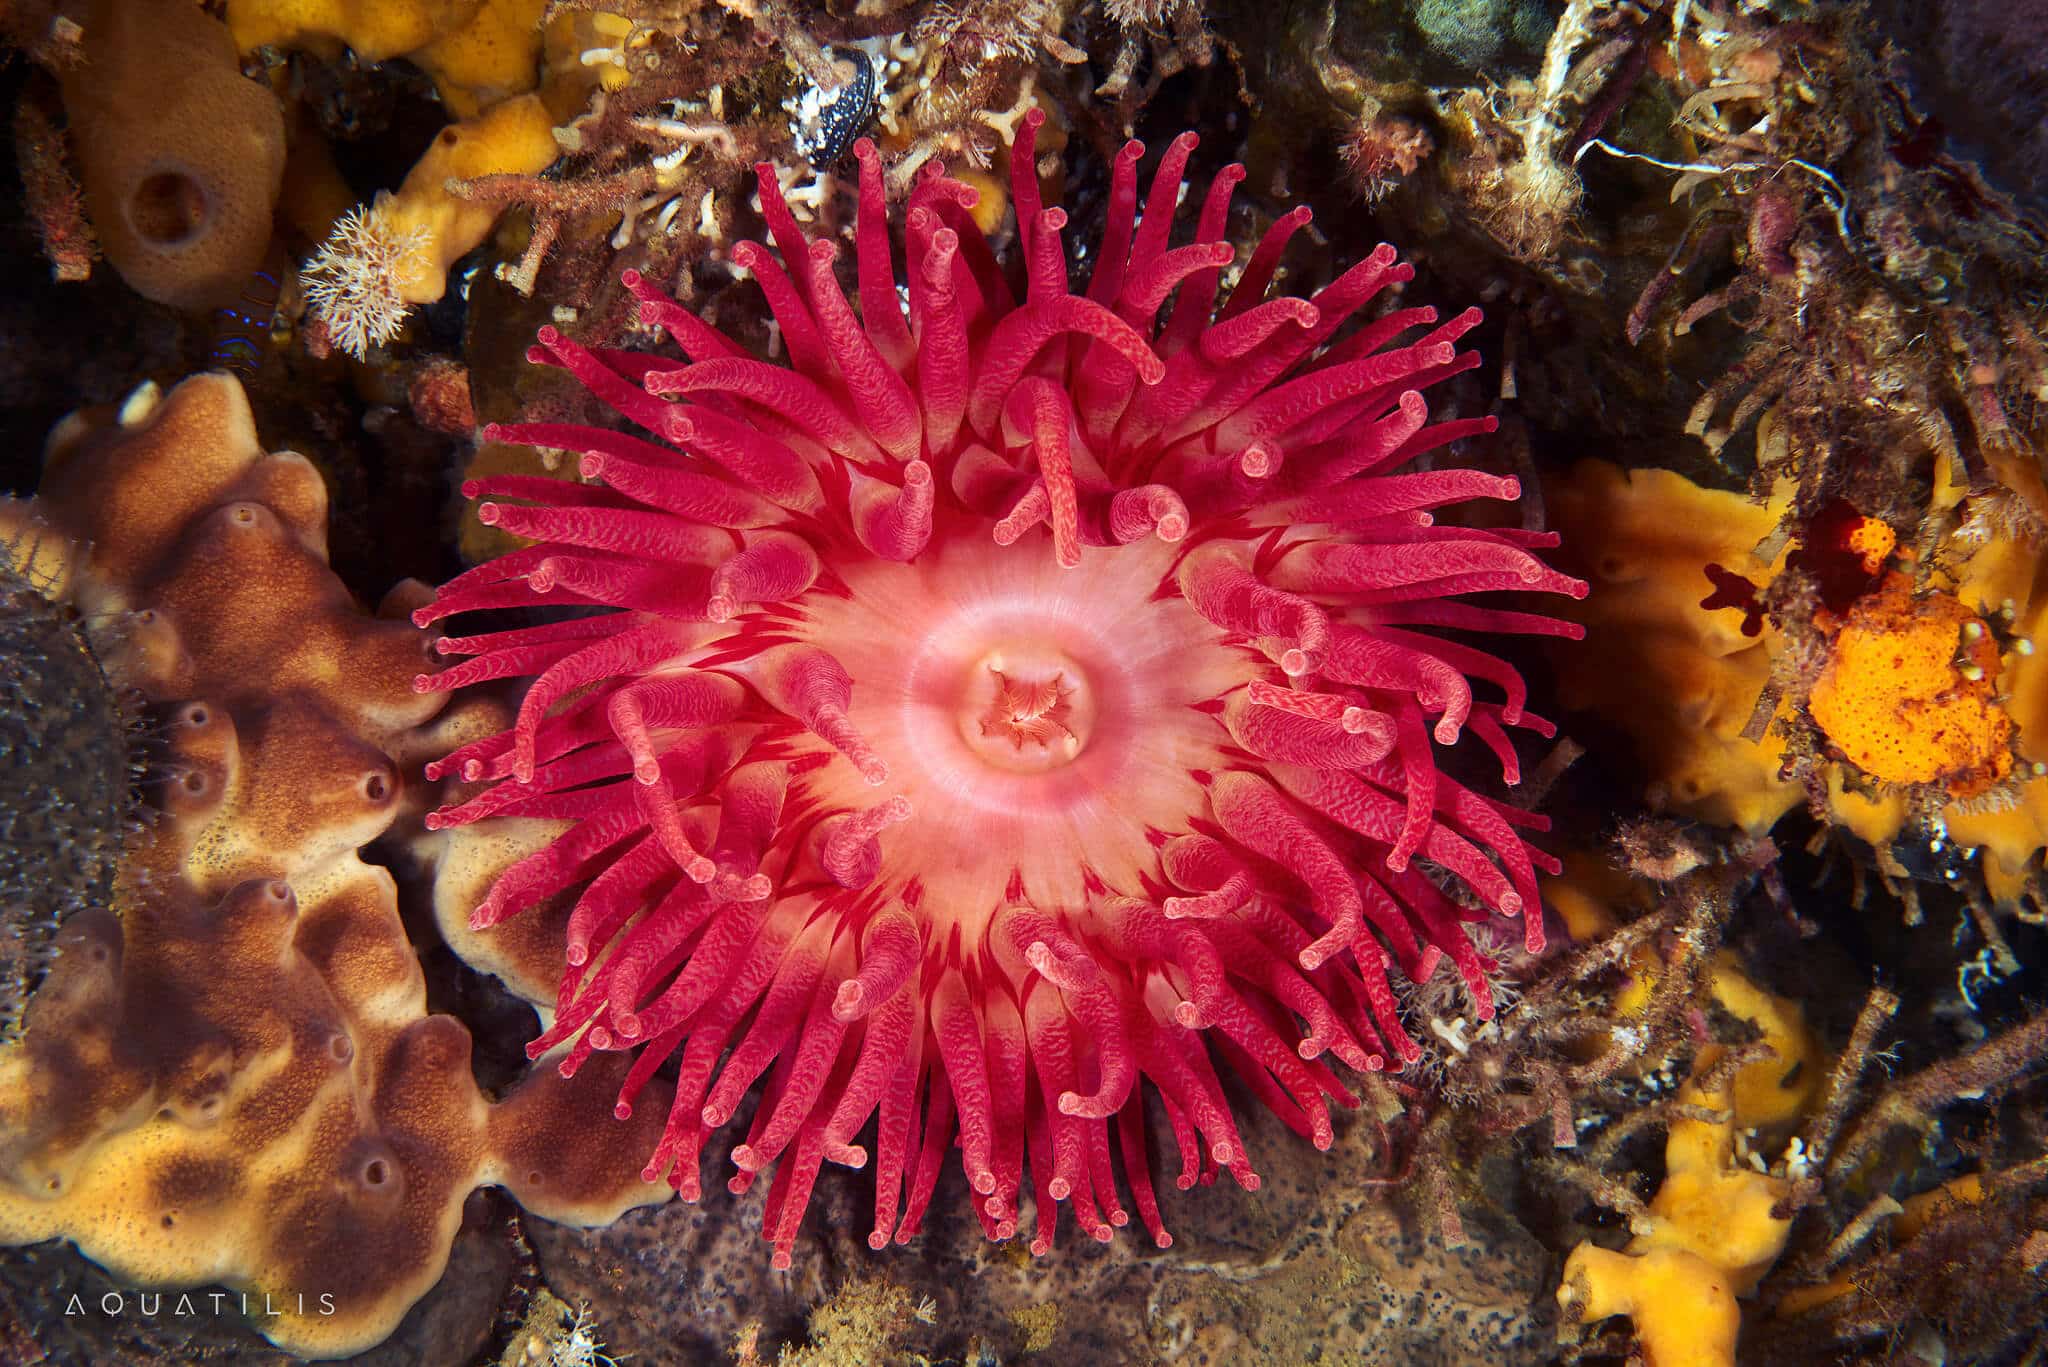 снимки удивительных существ из глубин мирового океана, фото 12